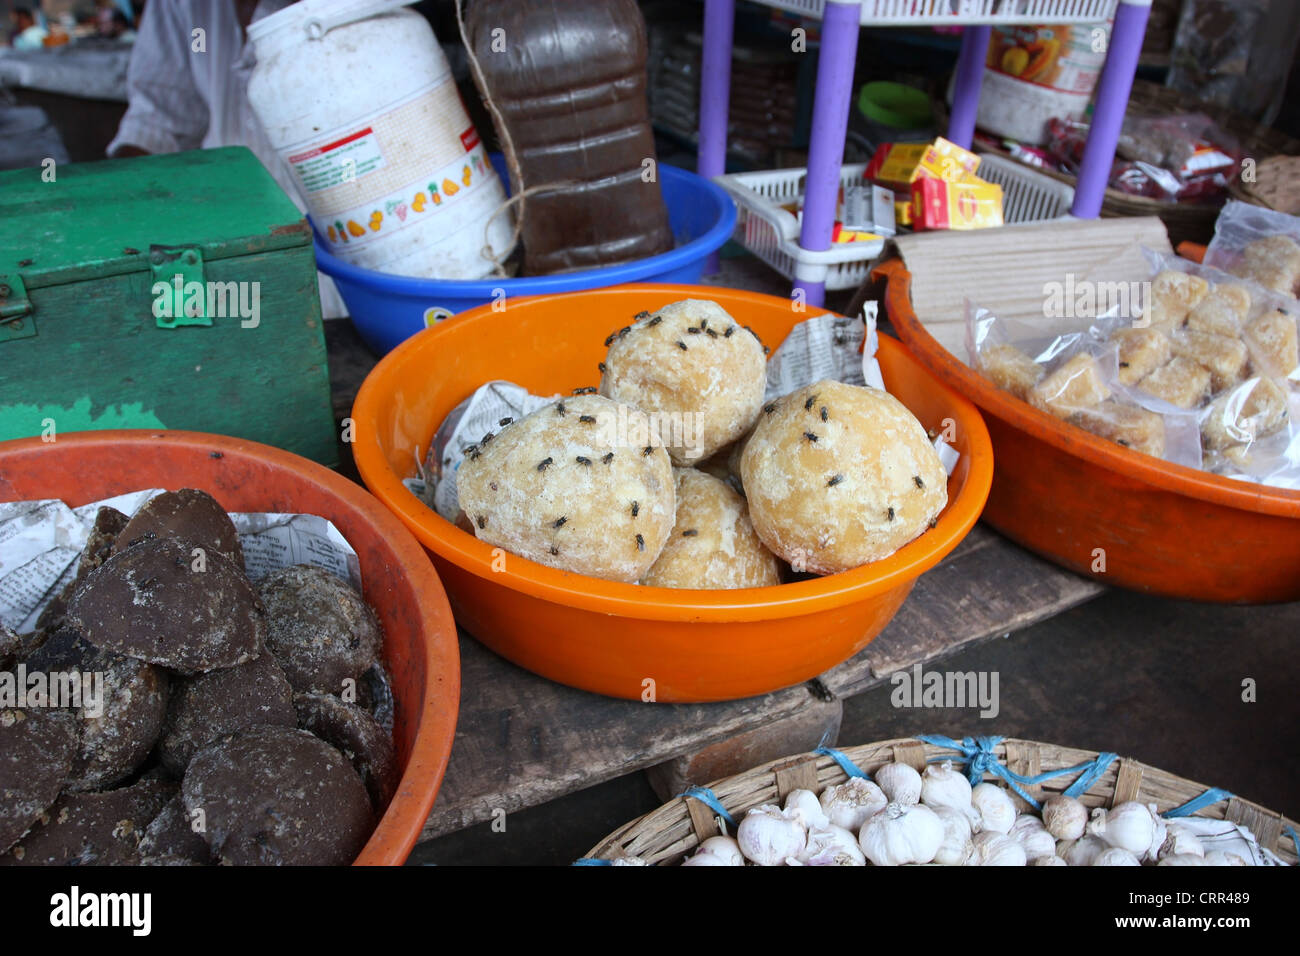 Sugar Palm que también es conocido como Jaggery cubierto de moscas en un puesto en el mercado indio Foto de stock